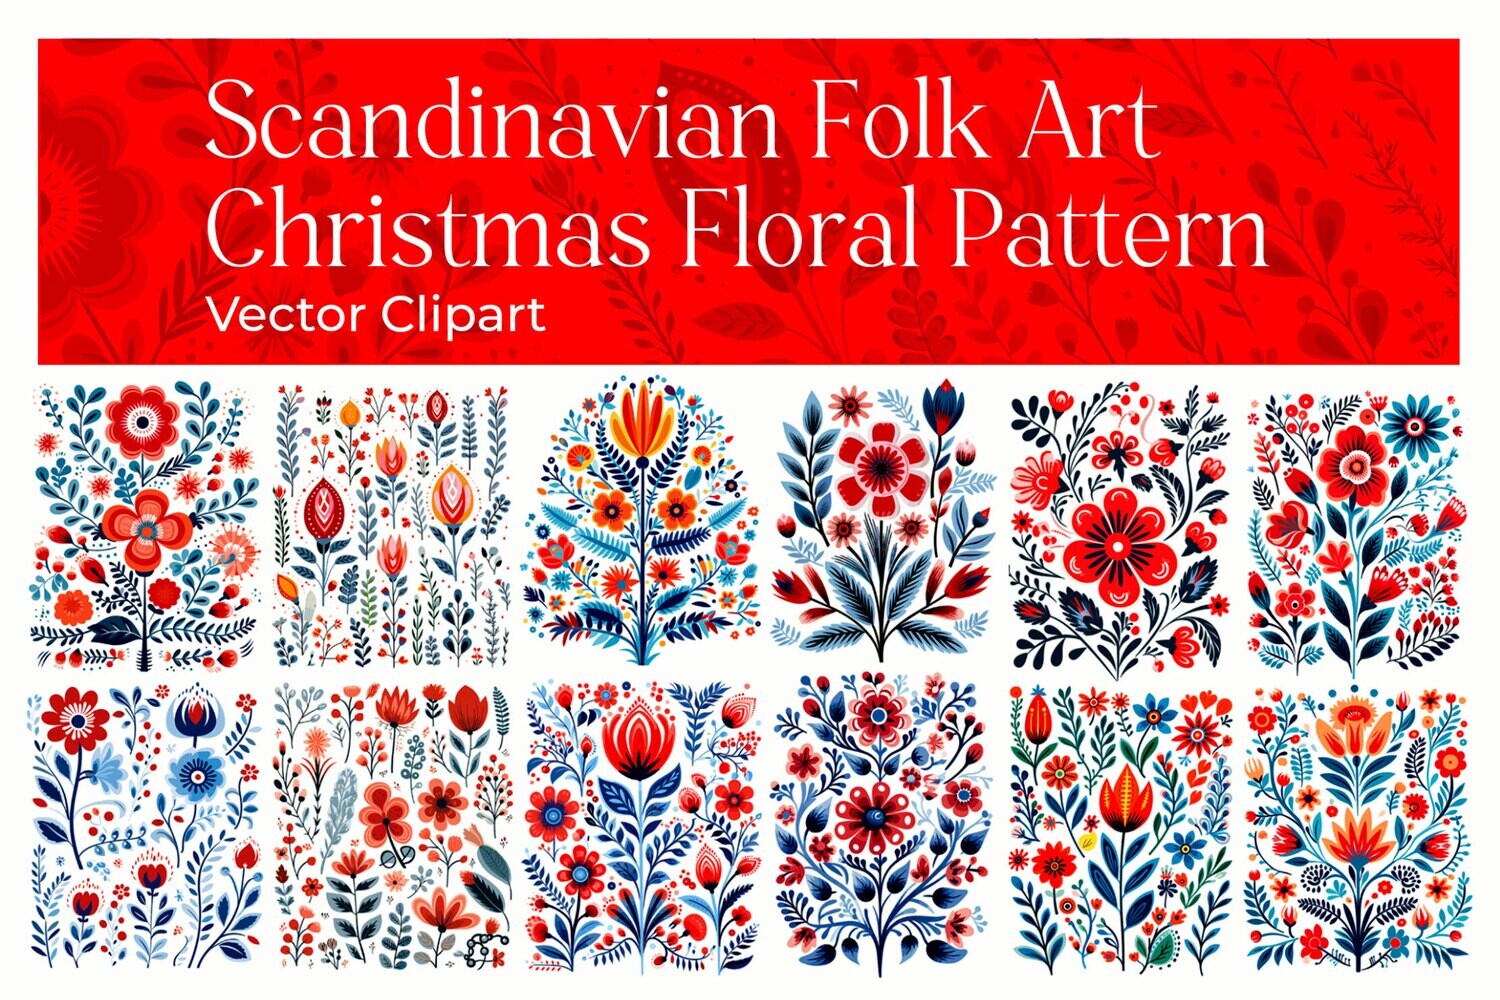 Scandinavian Folk Art Christmas Floral Pattern